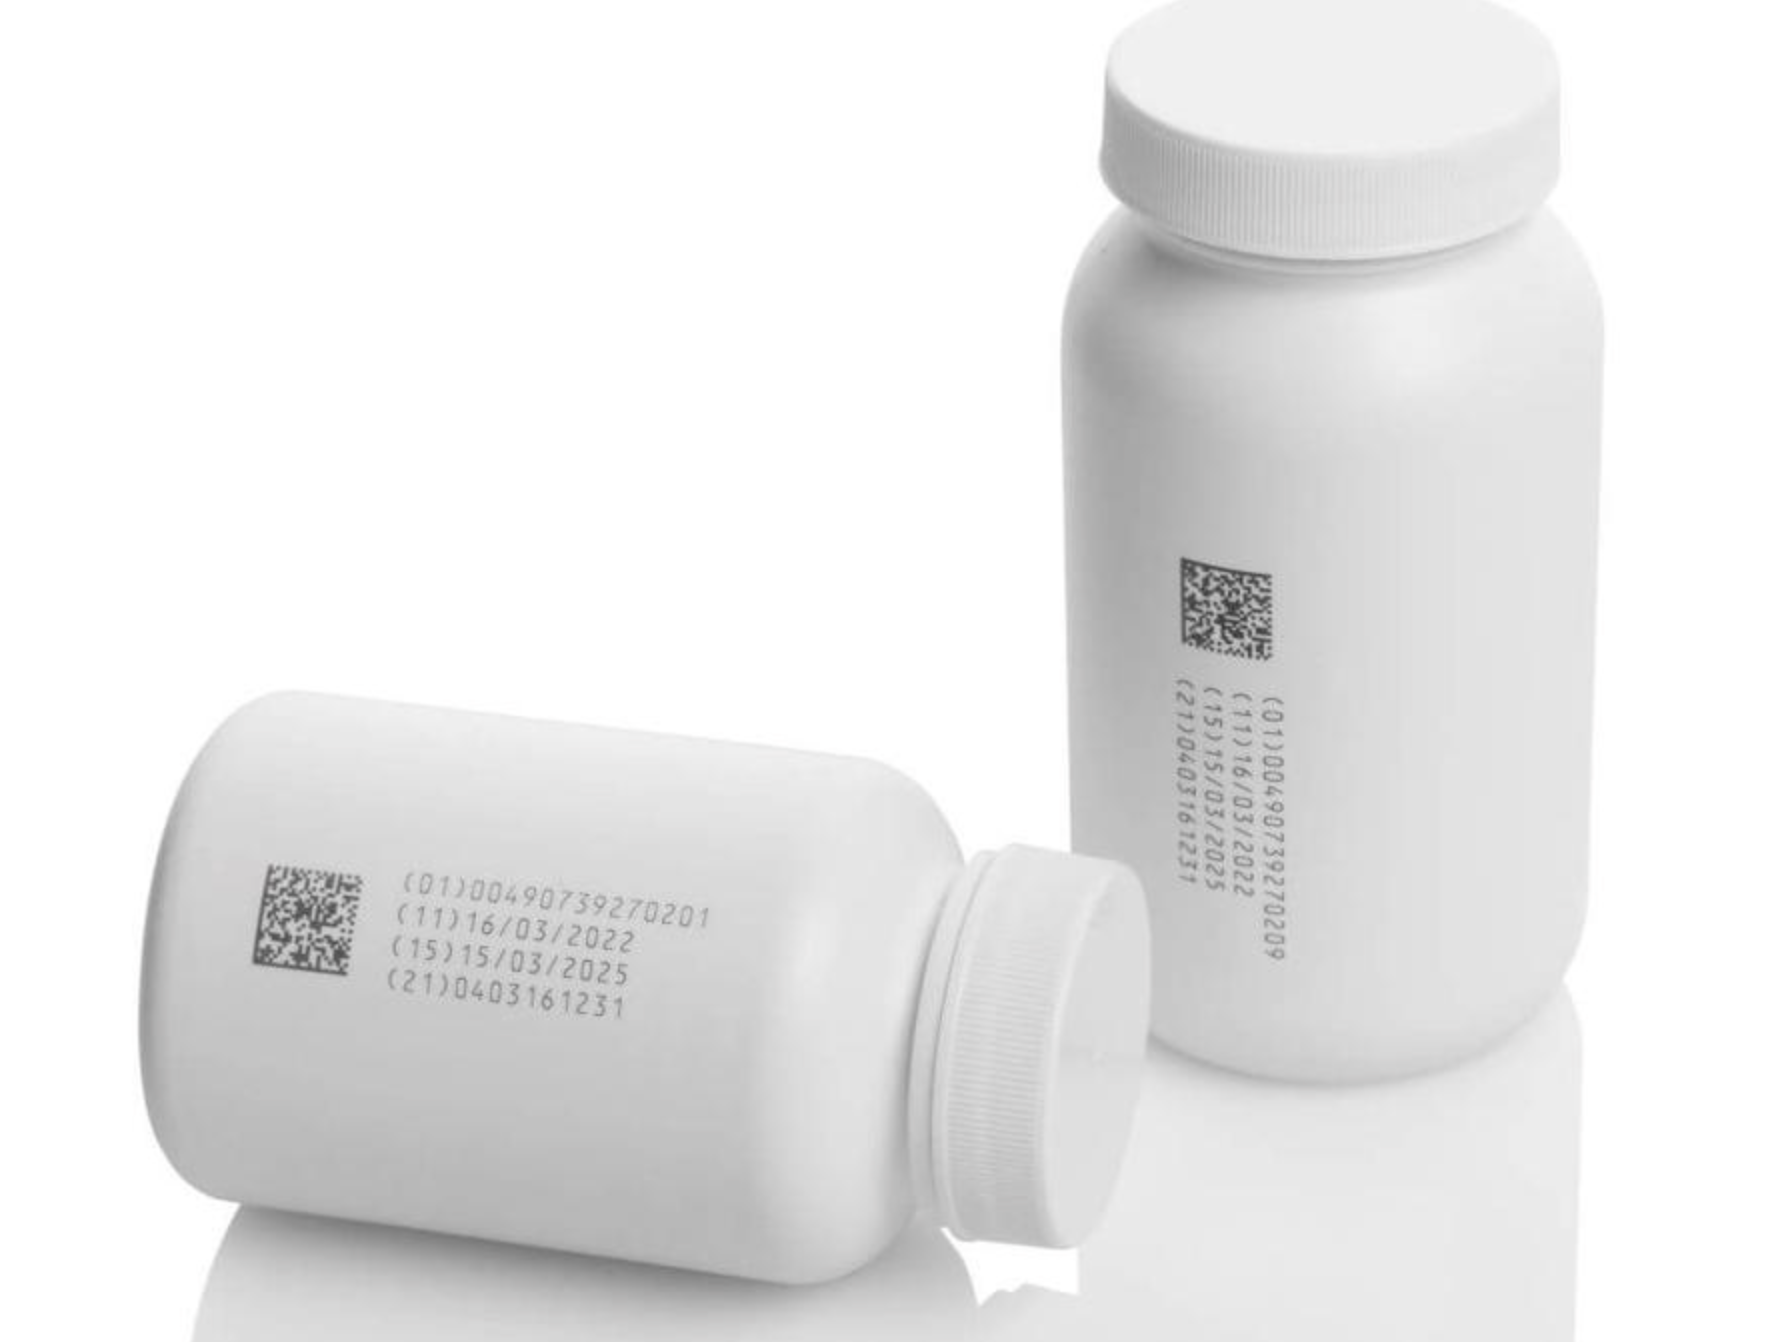 Domino U510 UV marking laser on white HDPE pharma bottles